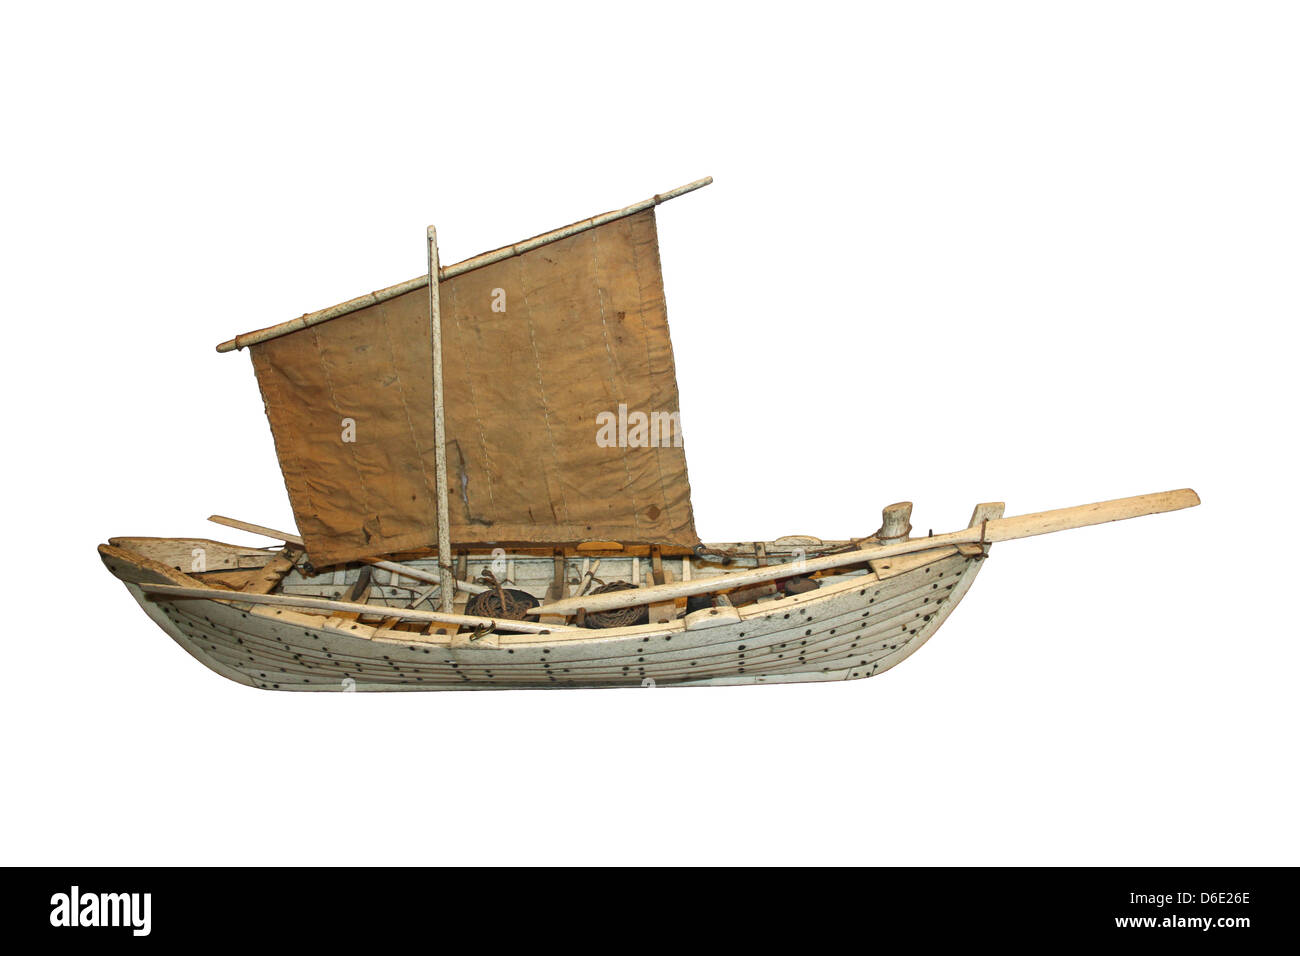 Modello del tipo di Whaleboat utilizzati nei mari del sud per la caccia di capodogli - è realizzato da Capodoglio osso mandibolare Foto Stock